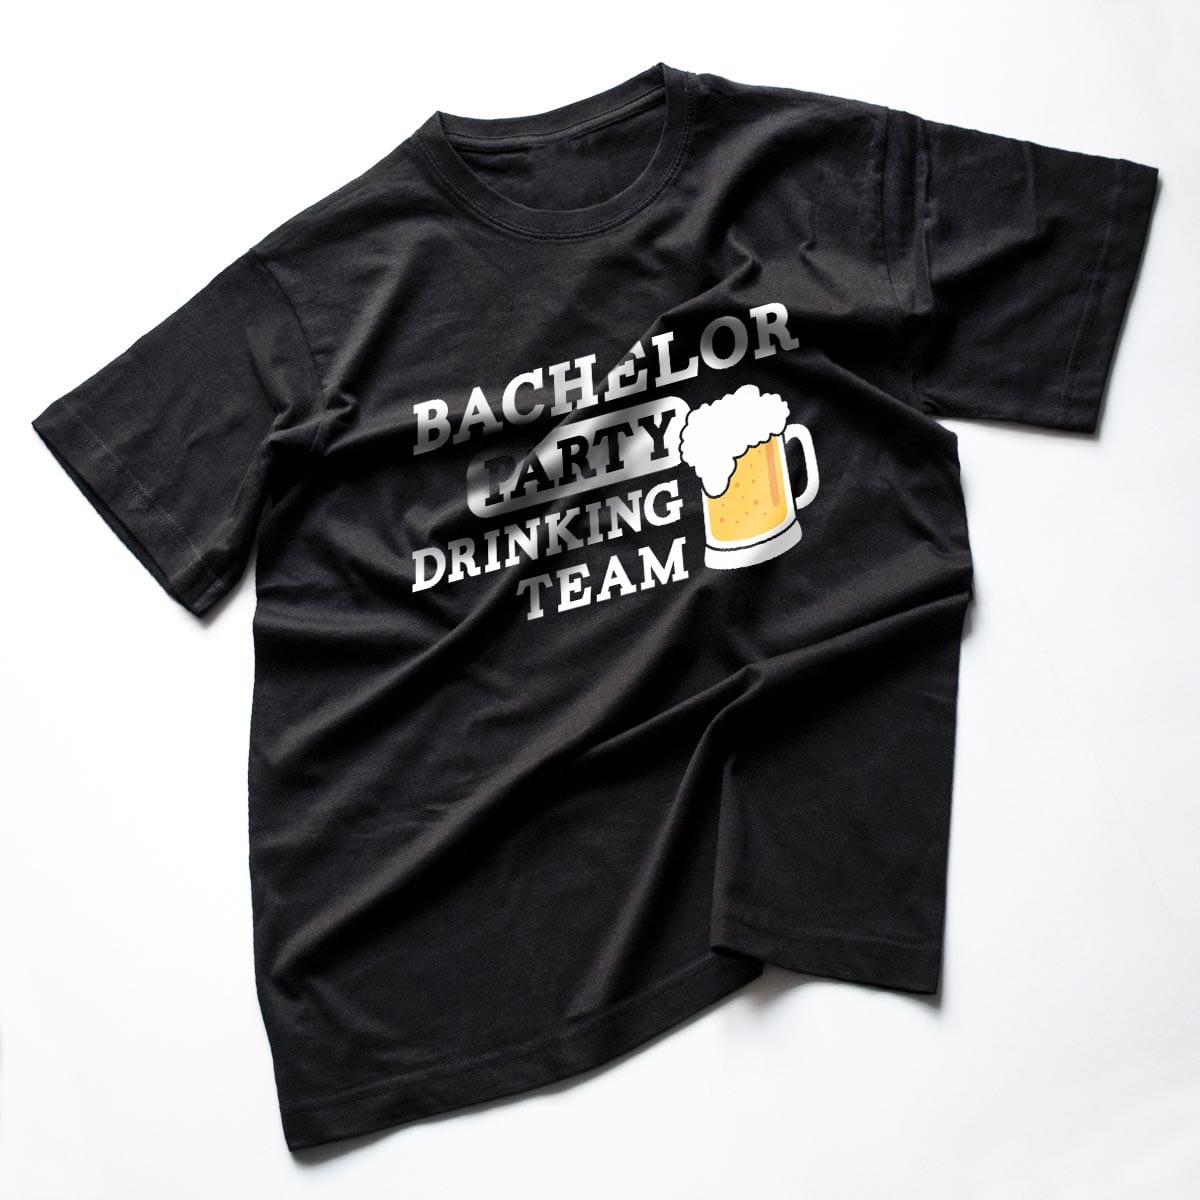 tricouri petrecerea burlacilor Bachelor 6